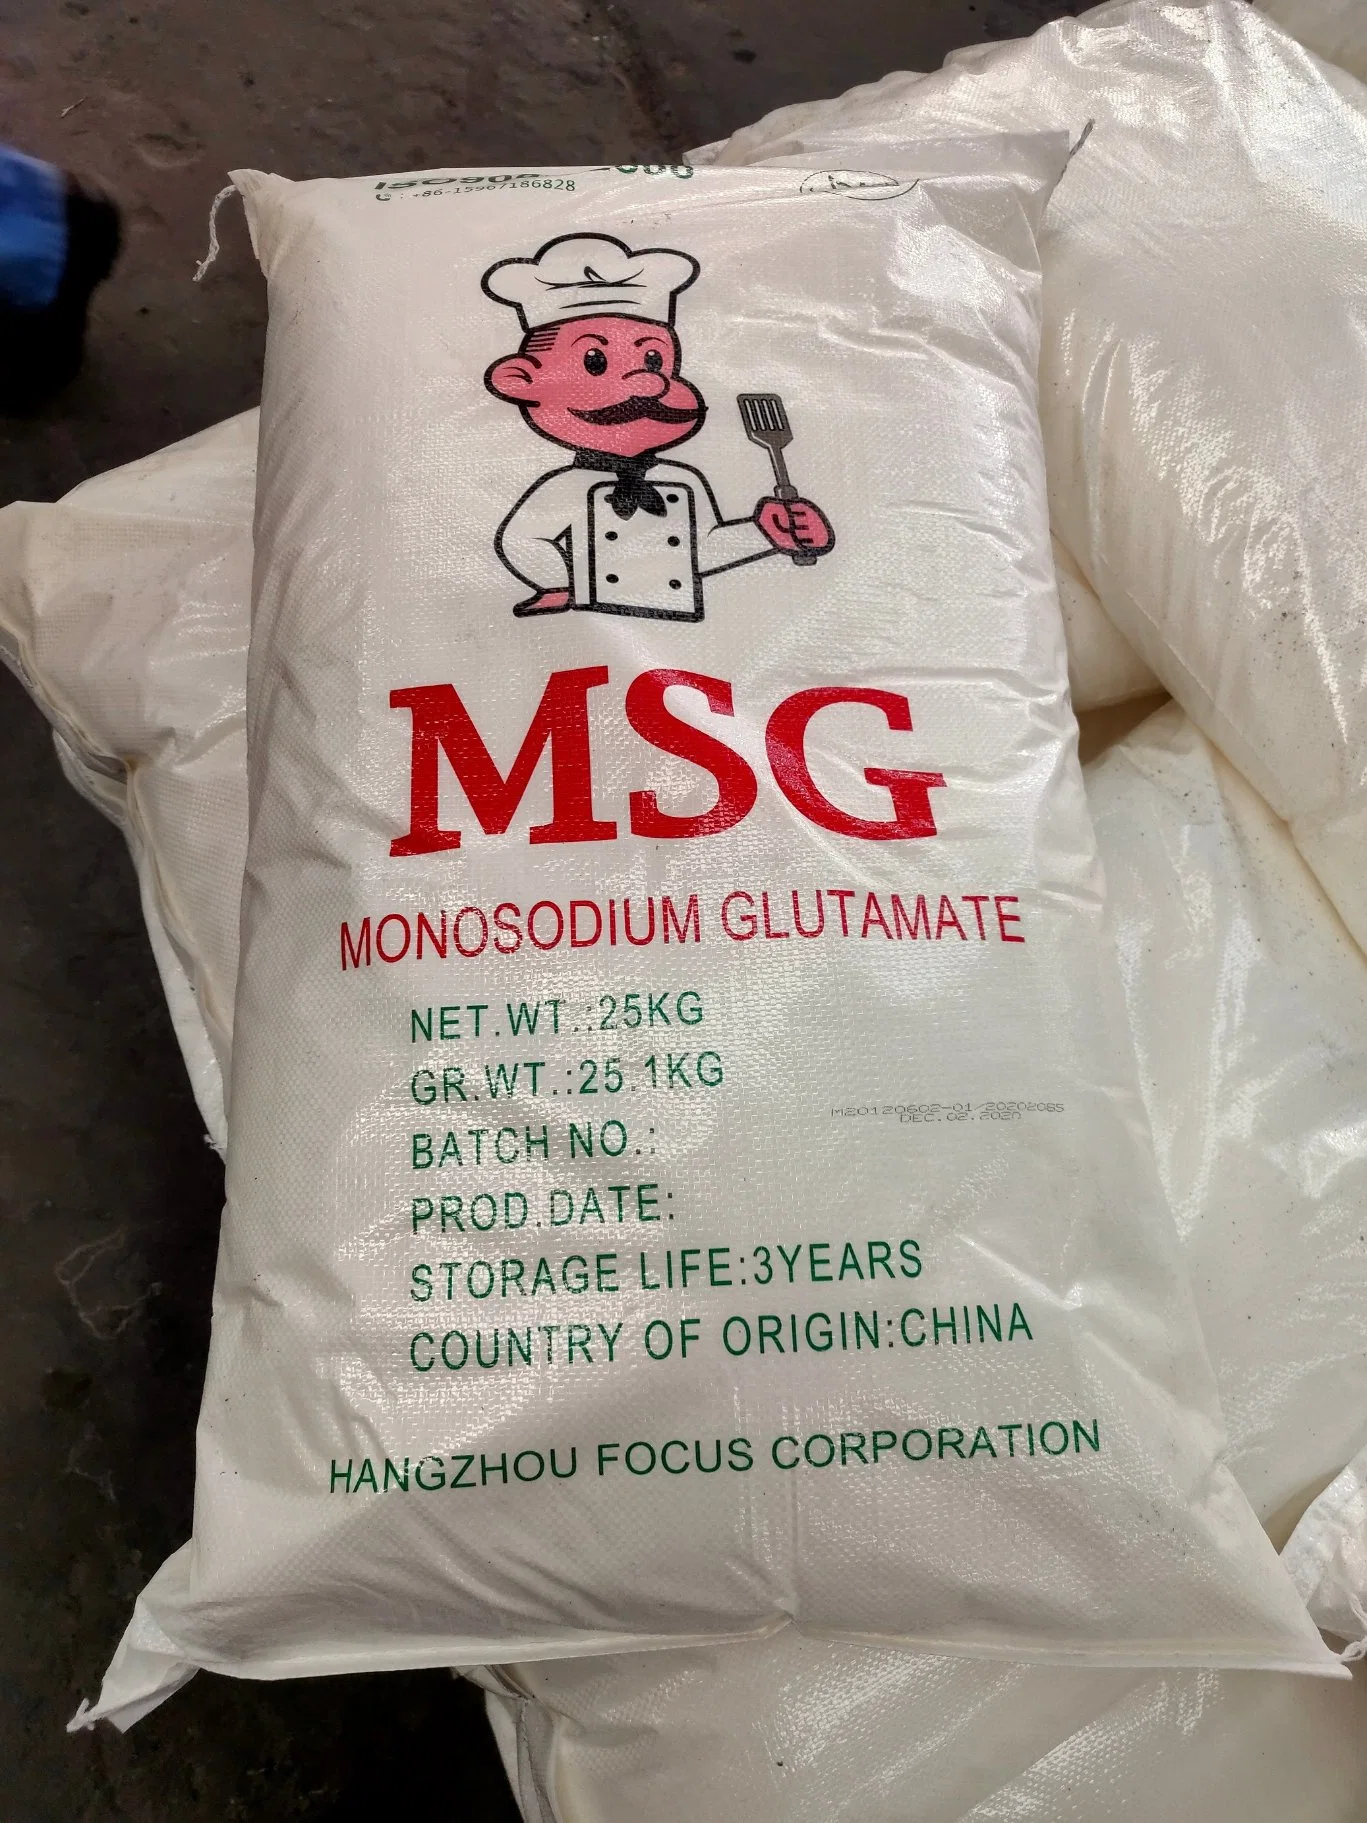 Tasting Salt Msg Monosodium Glutamate Seasoning Salt for Halal Cooking